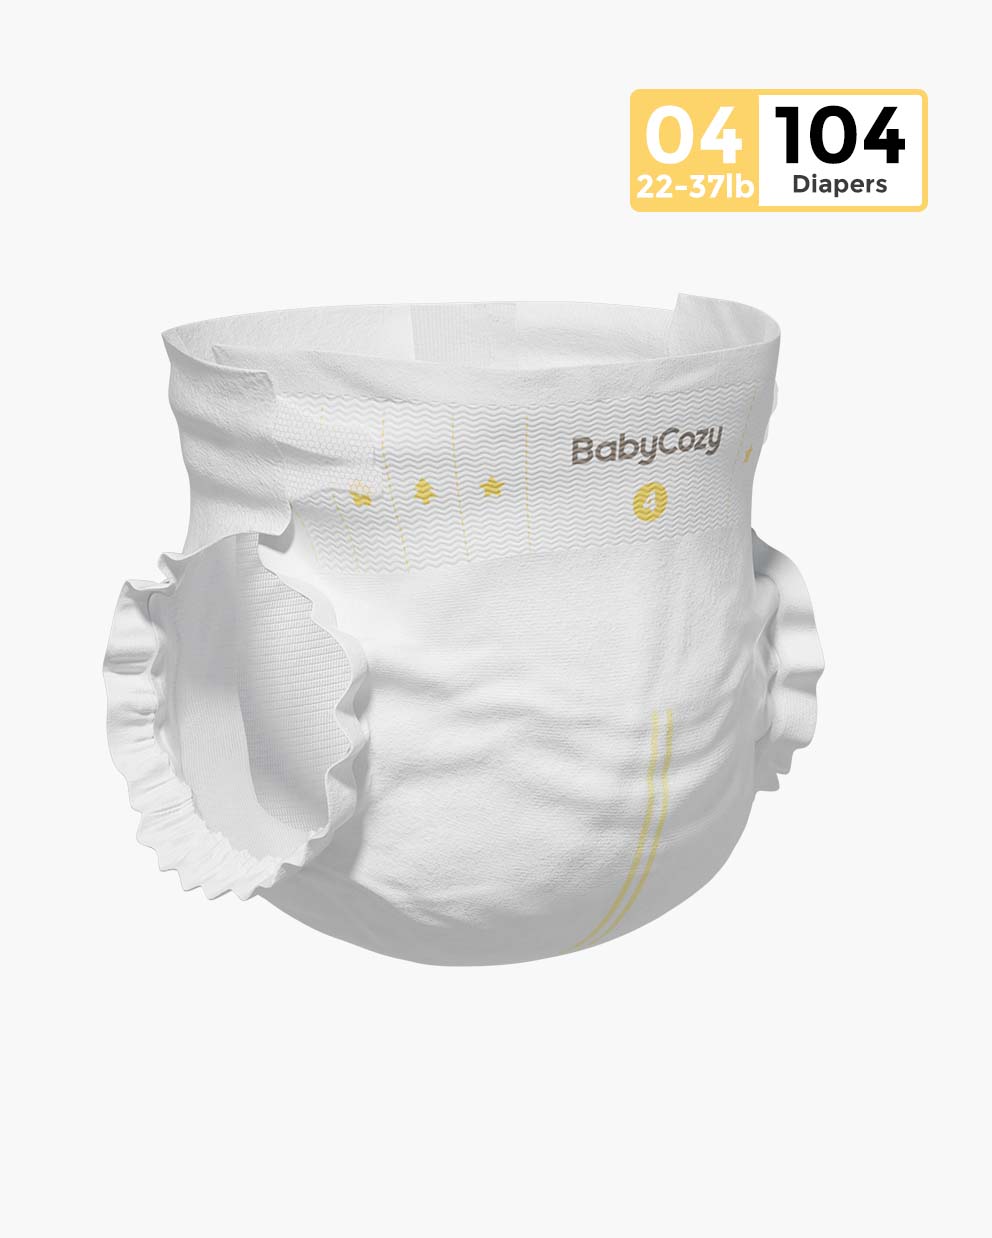 Babycozy BouncySoft - Pañales para recién nacidos para piel sensible,  pañales desechables hipoalergénicos, pañales blancos lisos sin cloro,  pañales